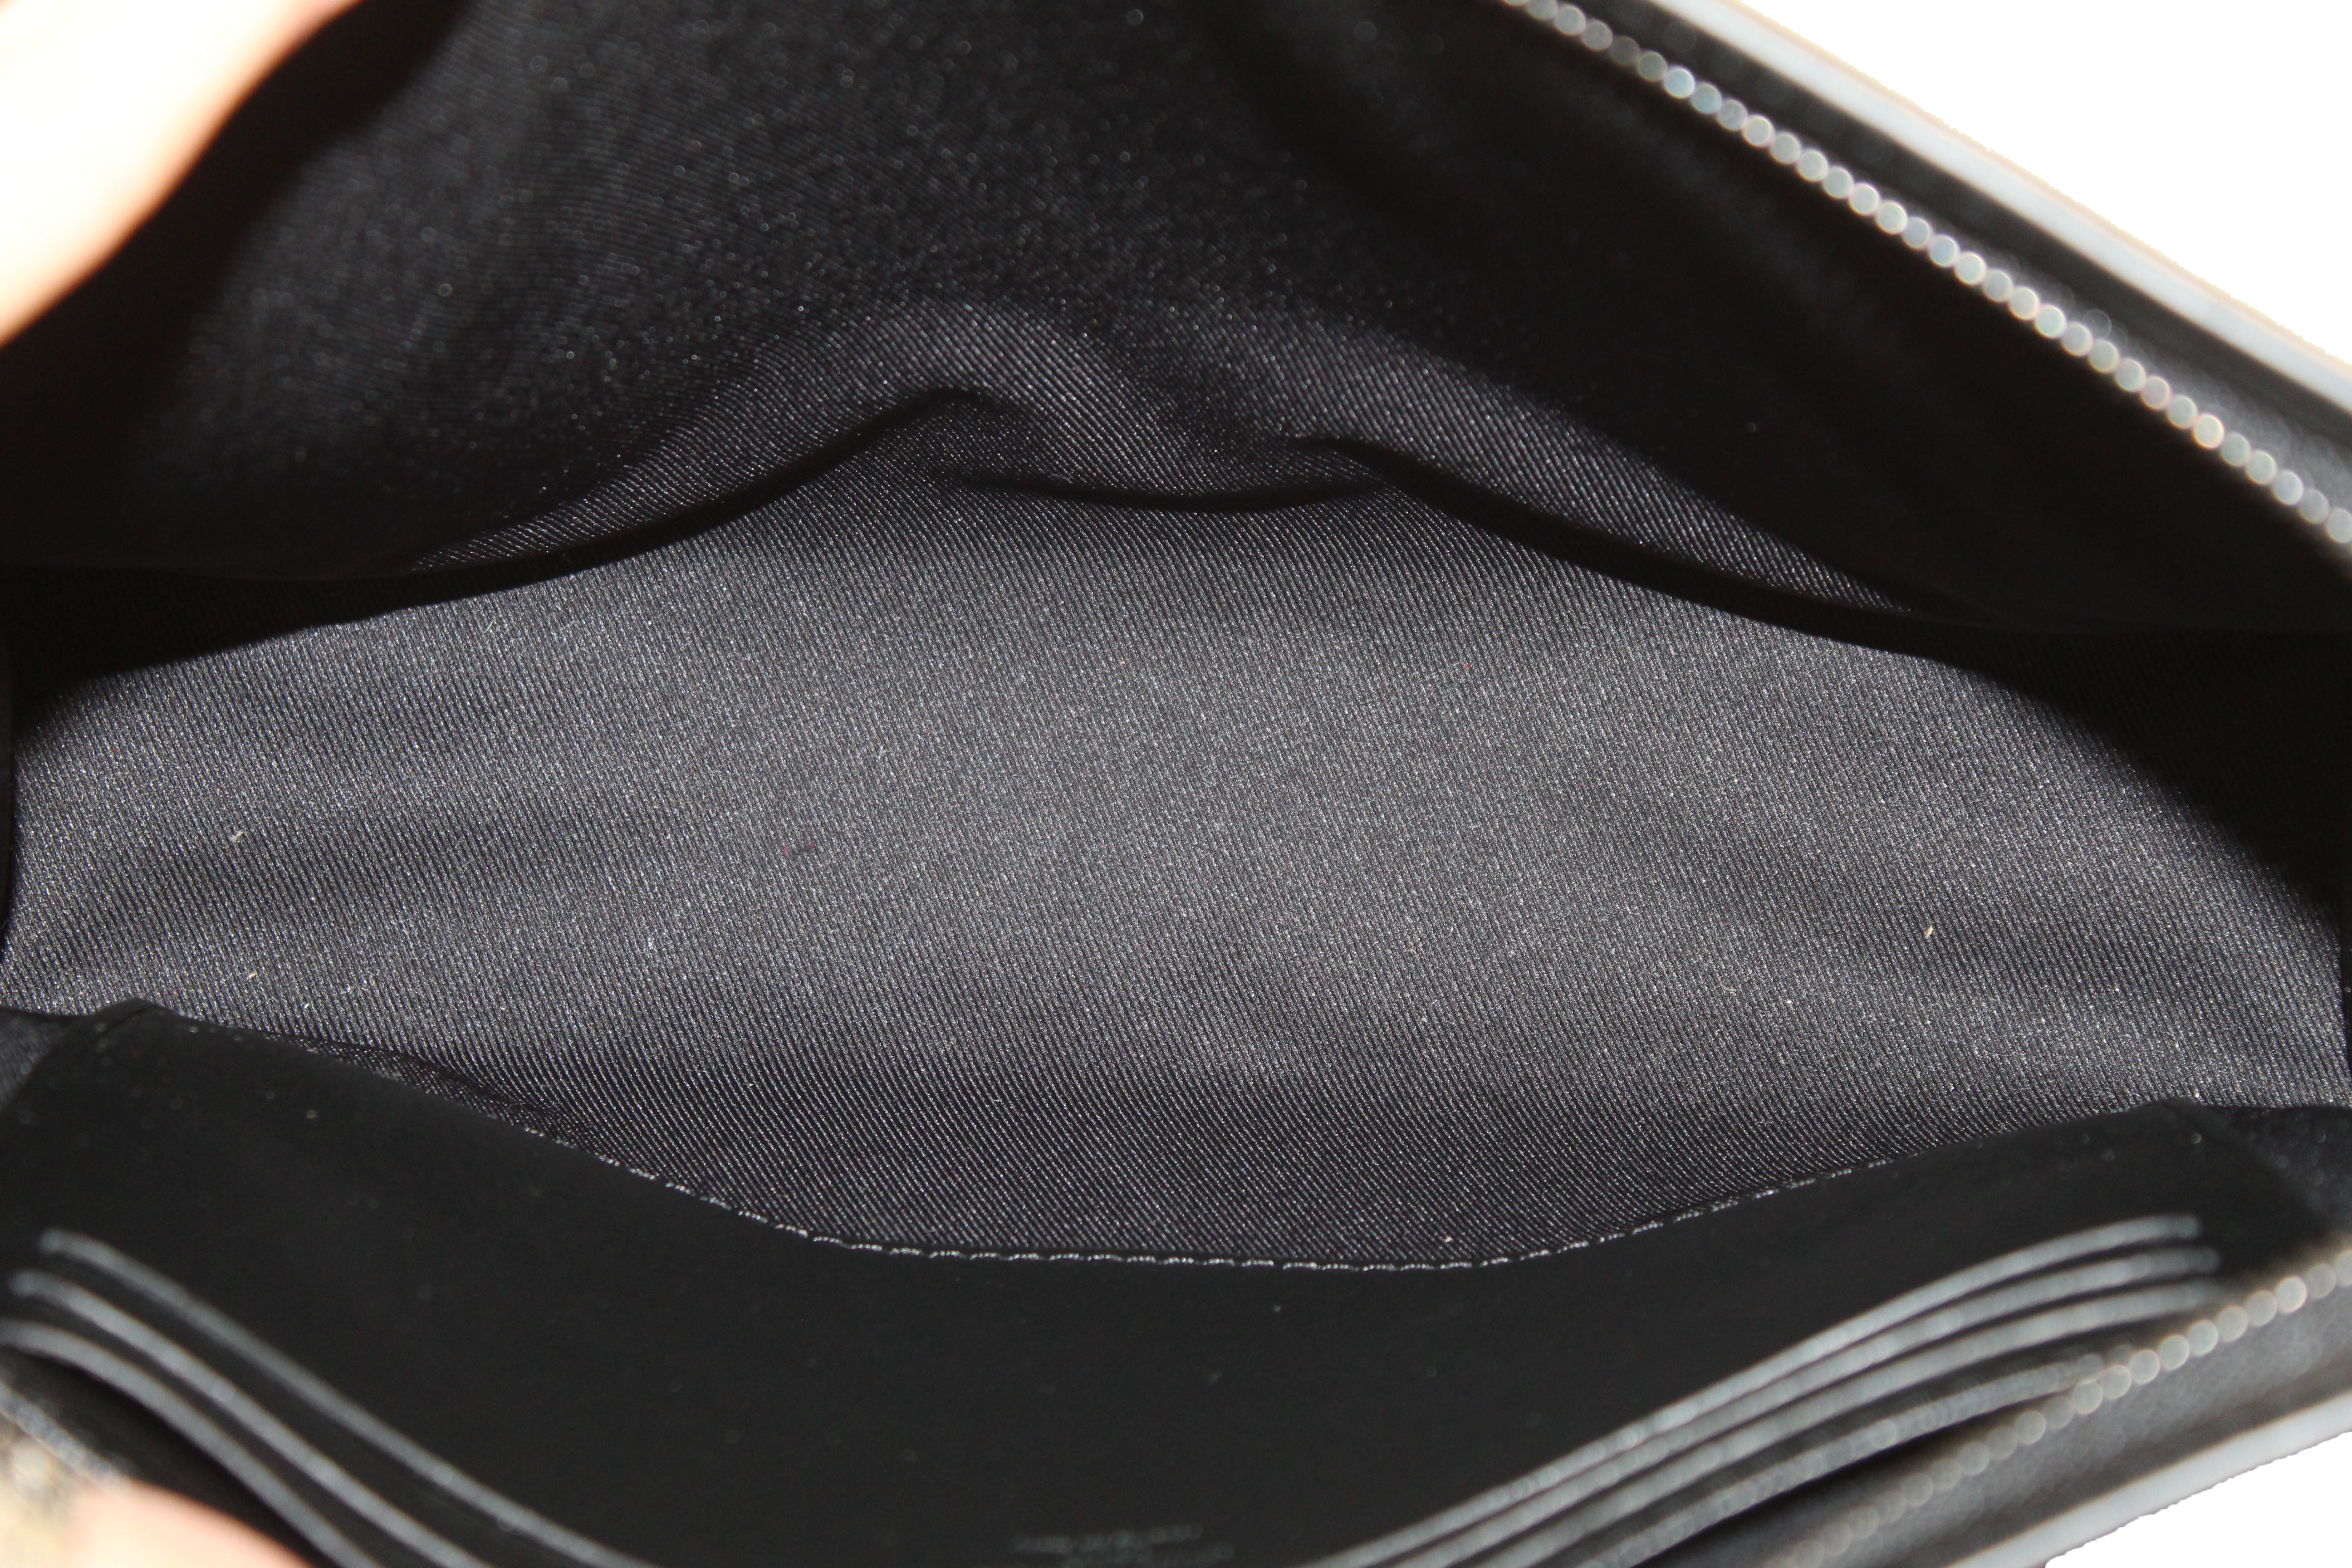 Mint Auth Louis Vuitton M45480 Pochette Voyage Monogram Clouds Clutch Bag  F/S